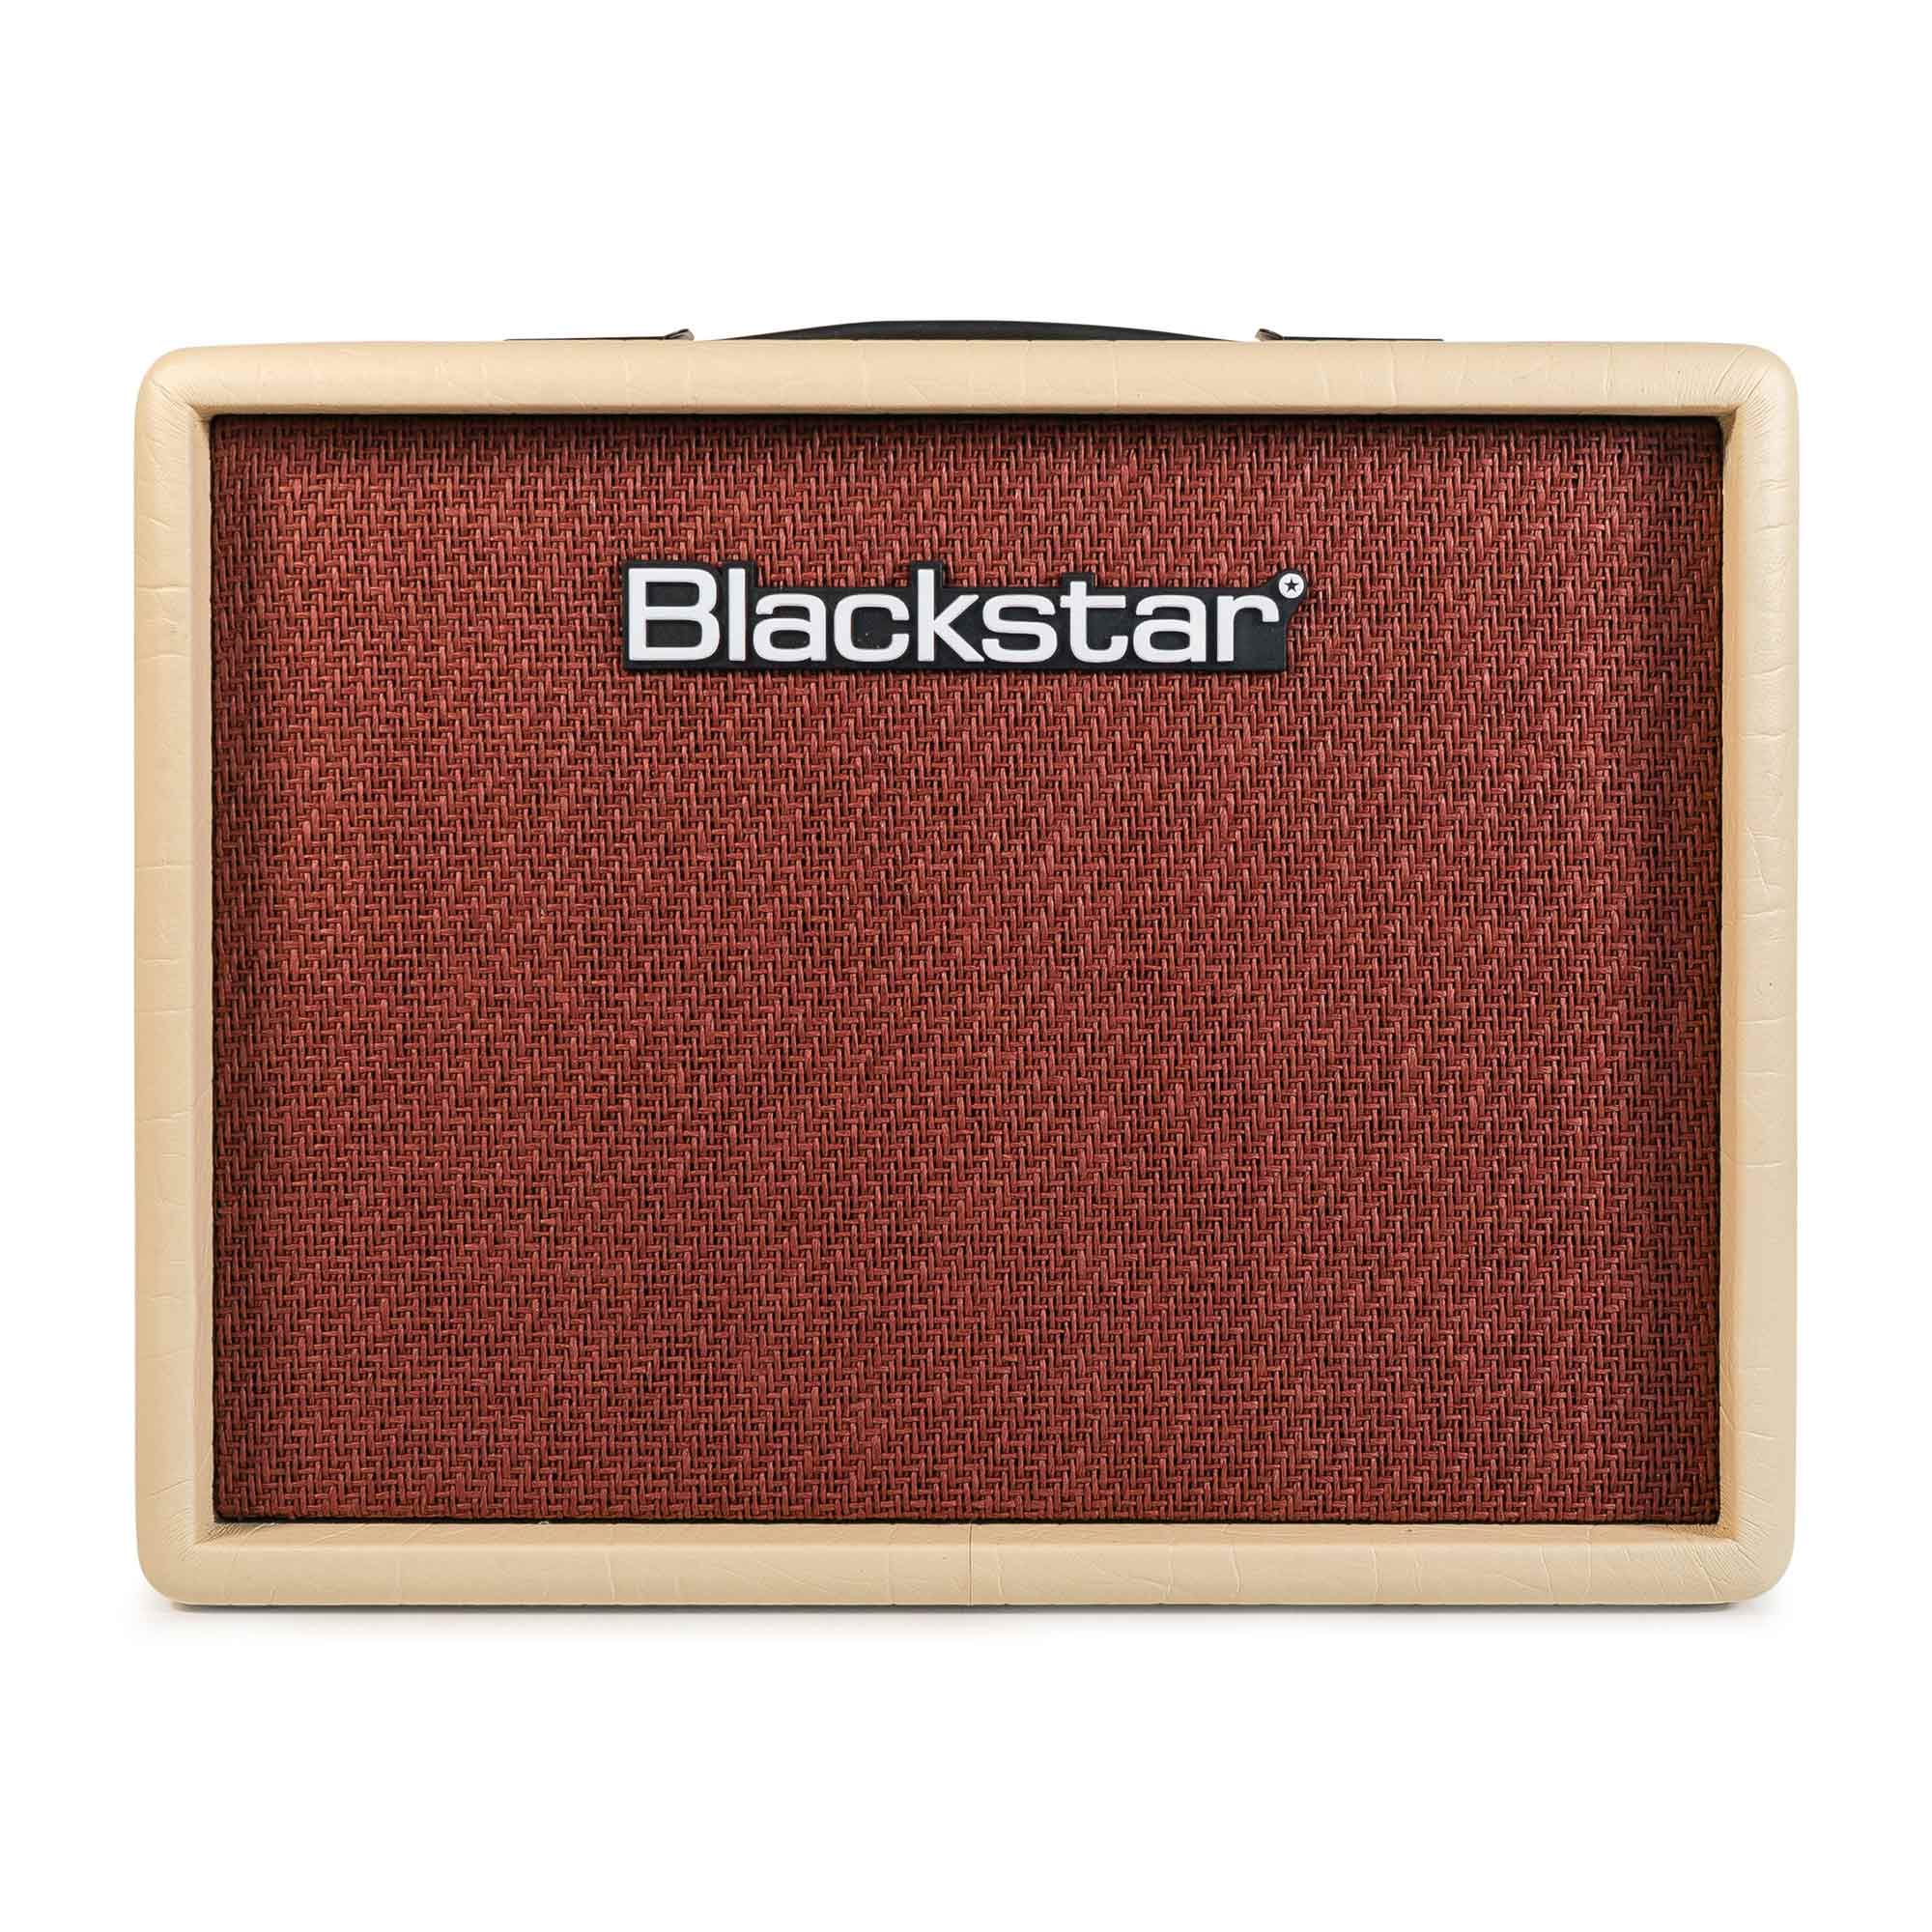 Blackstar Debut 15E Amplificador de Guitarra Amplificadores de Guitarra Blackstar 